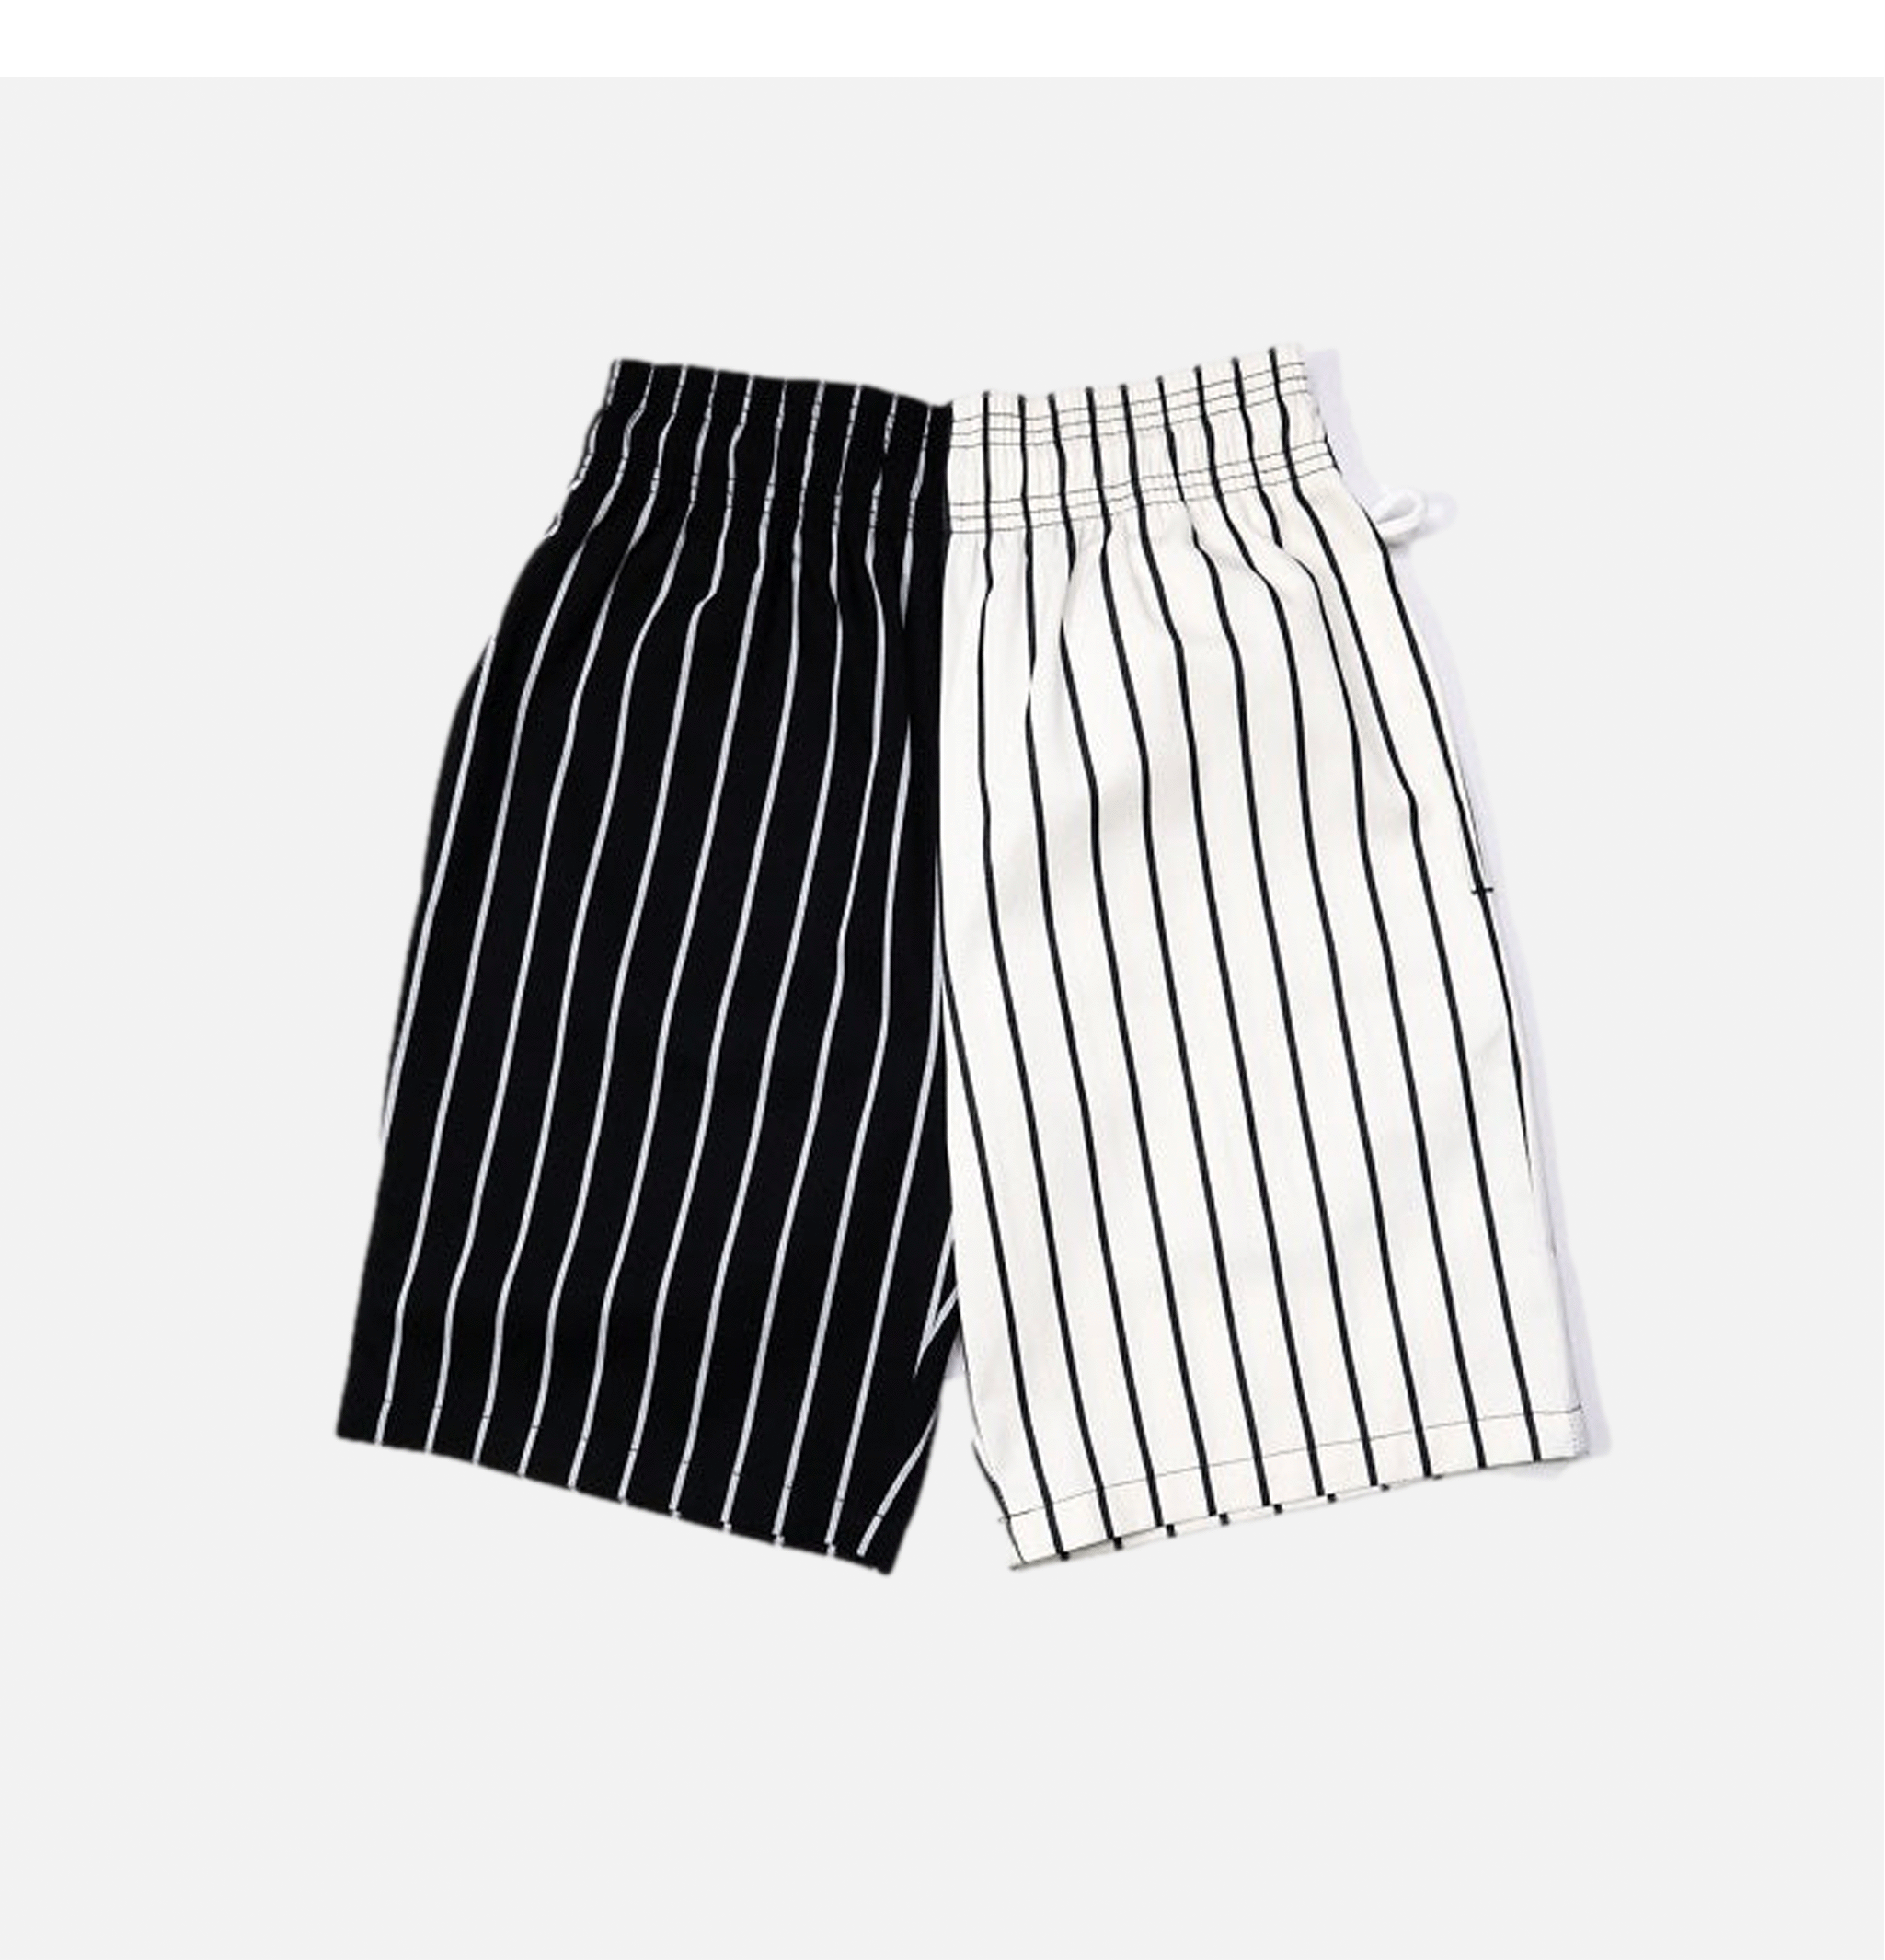 Chef Short Stripes Black/white